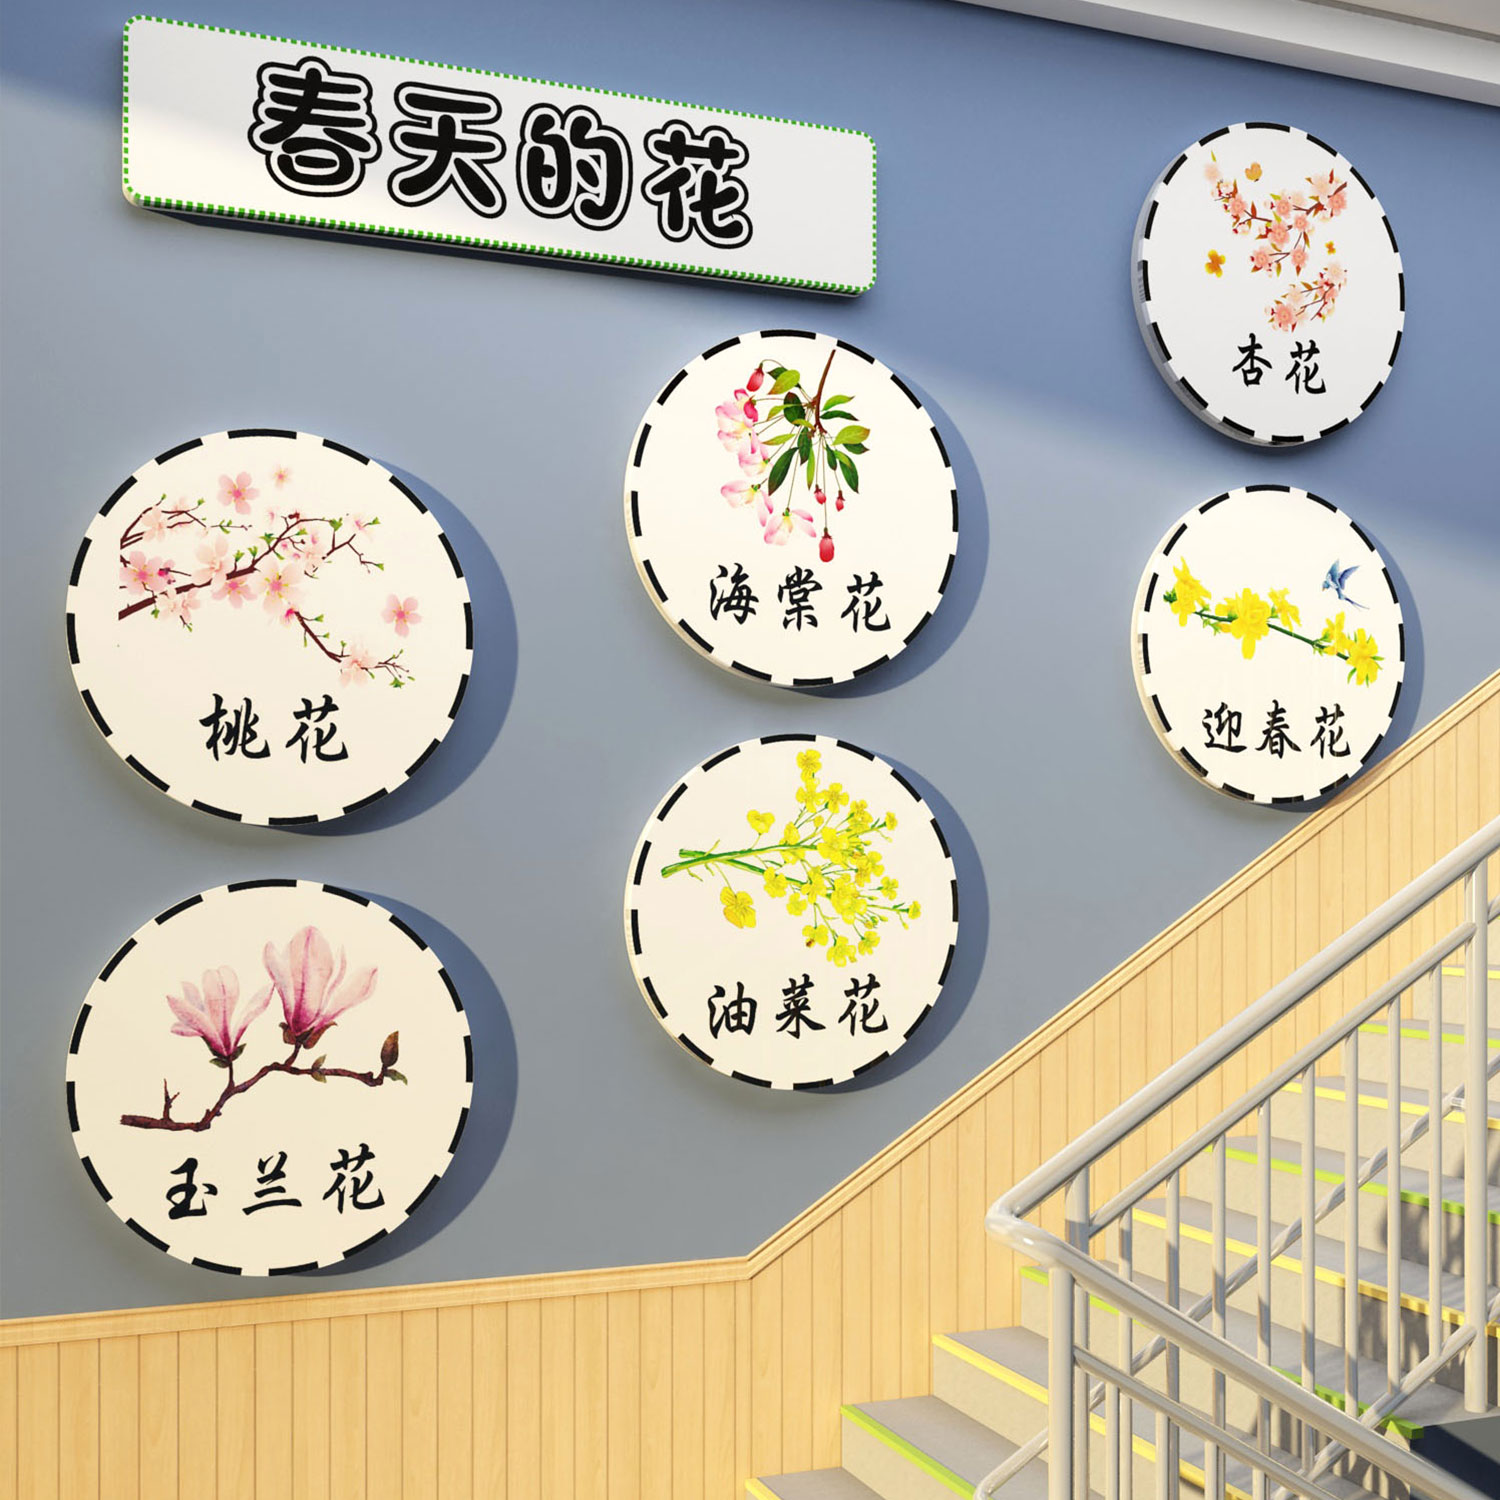 幼儿园春天主题成品环创境布置材料楼梯墙面装饰开学场景氛围布置